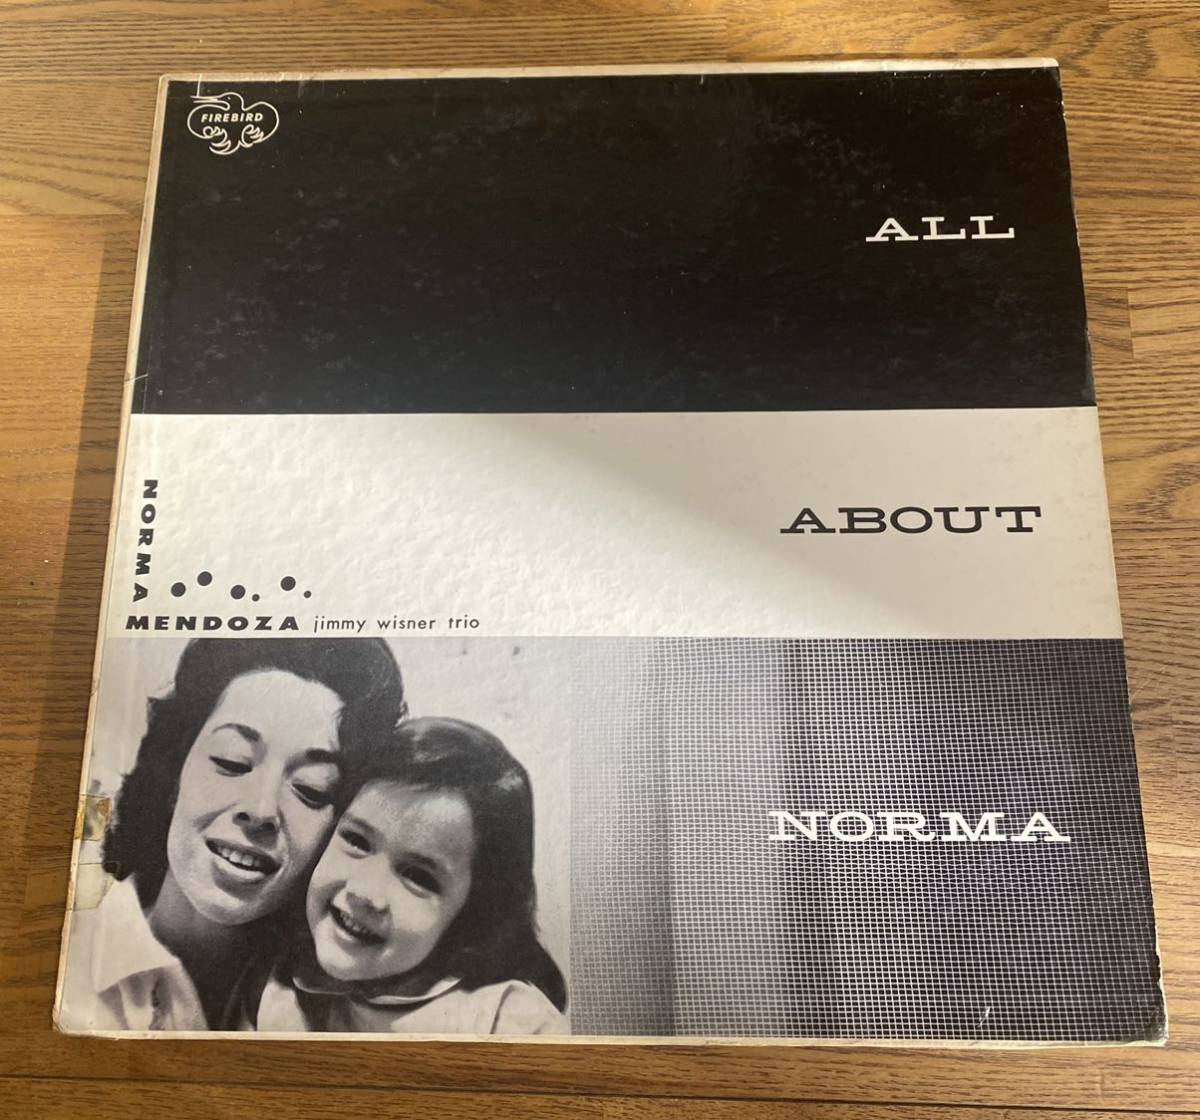 正真正銘オリジナル盤! 幻の女性Vo.永遠の傑作/ ‘60 US Firebird Records FB 1000/ Norma Mendoza & Jimmy Wisner Trio[All About Norma]_画像2